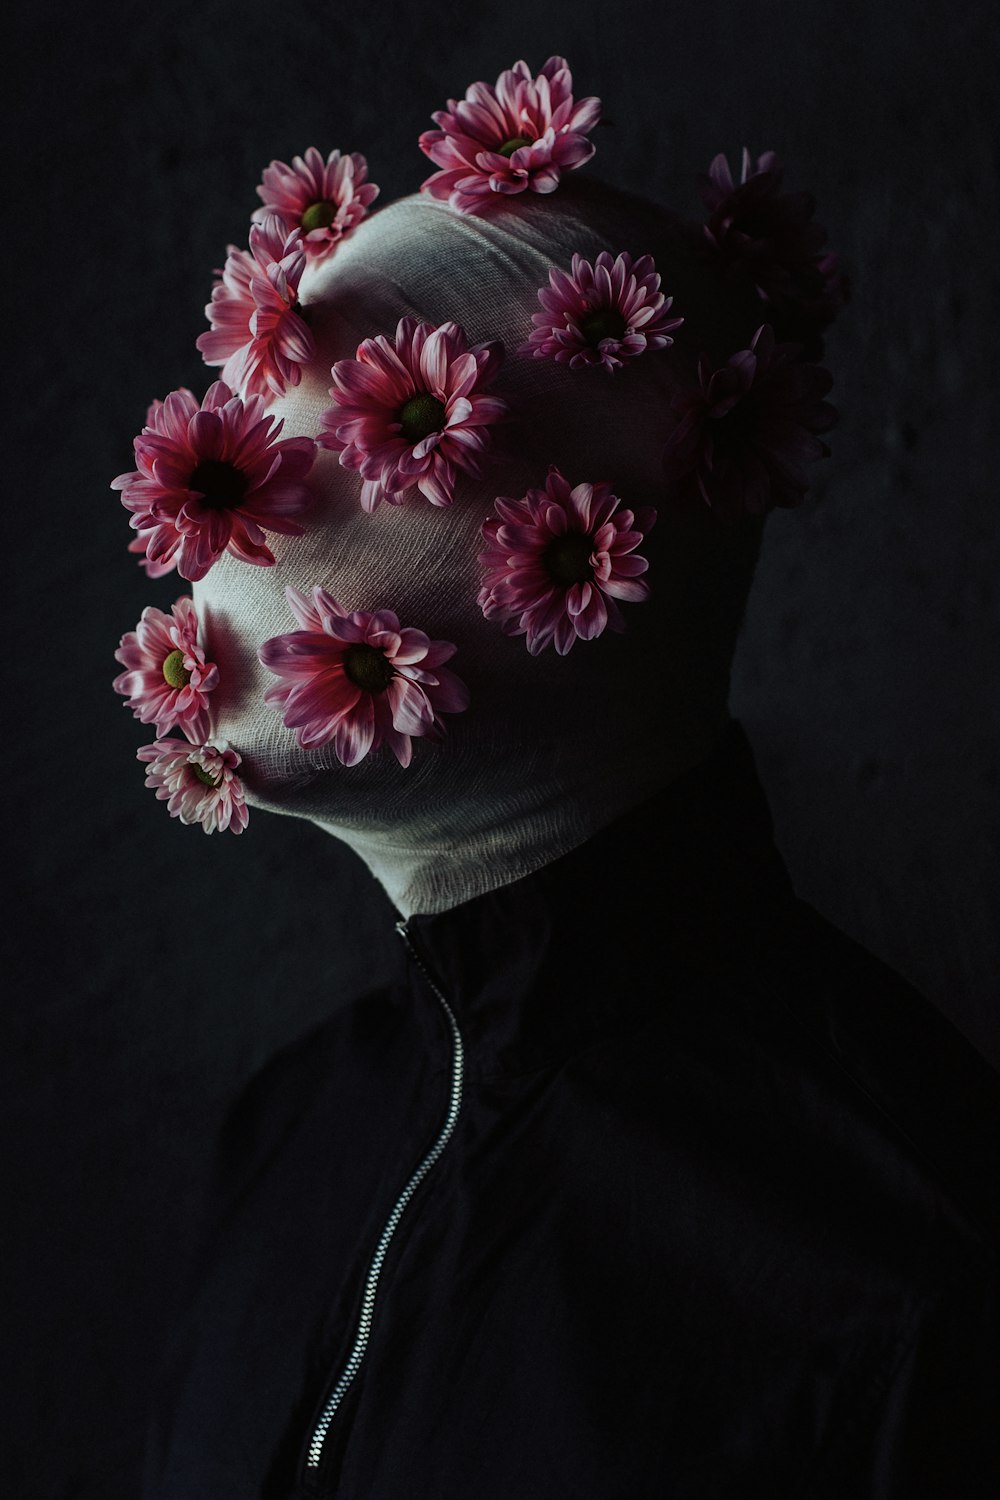 暗闇の中で頭に花を咲かせた人